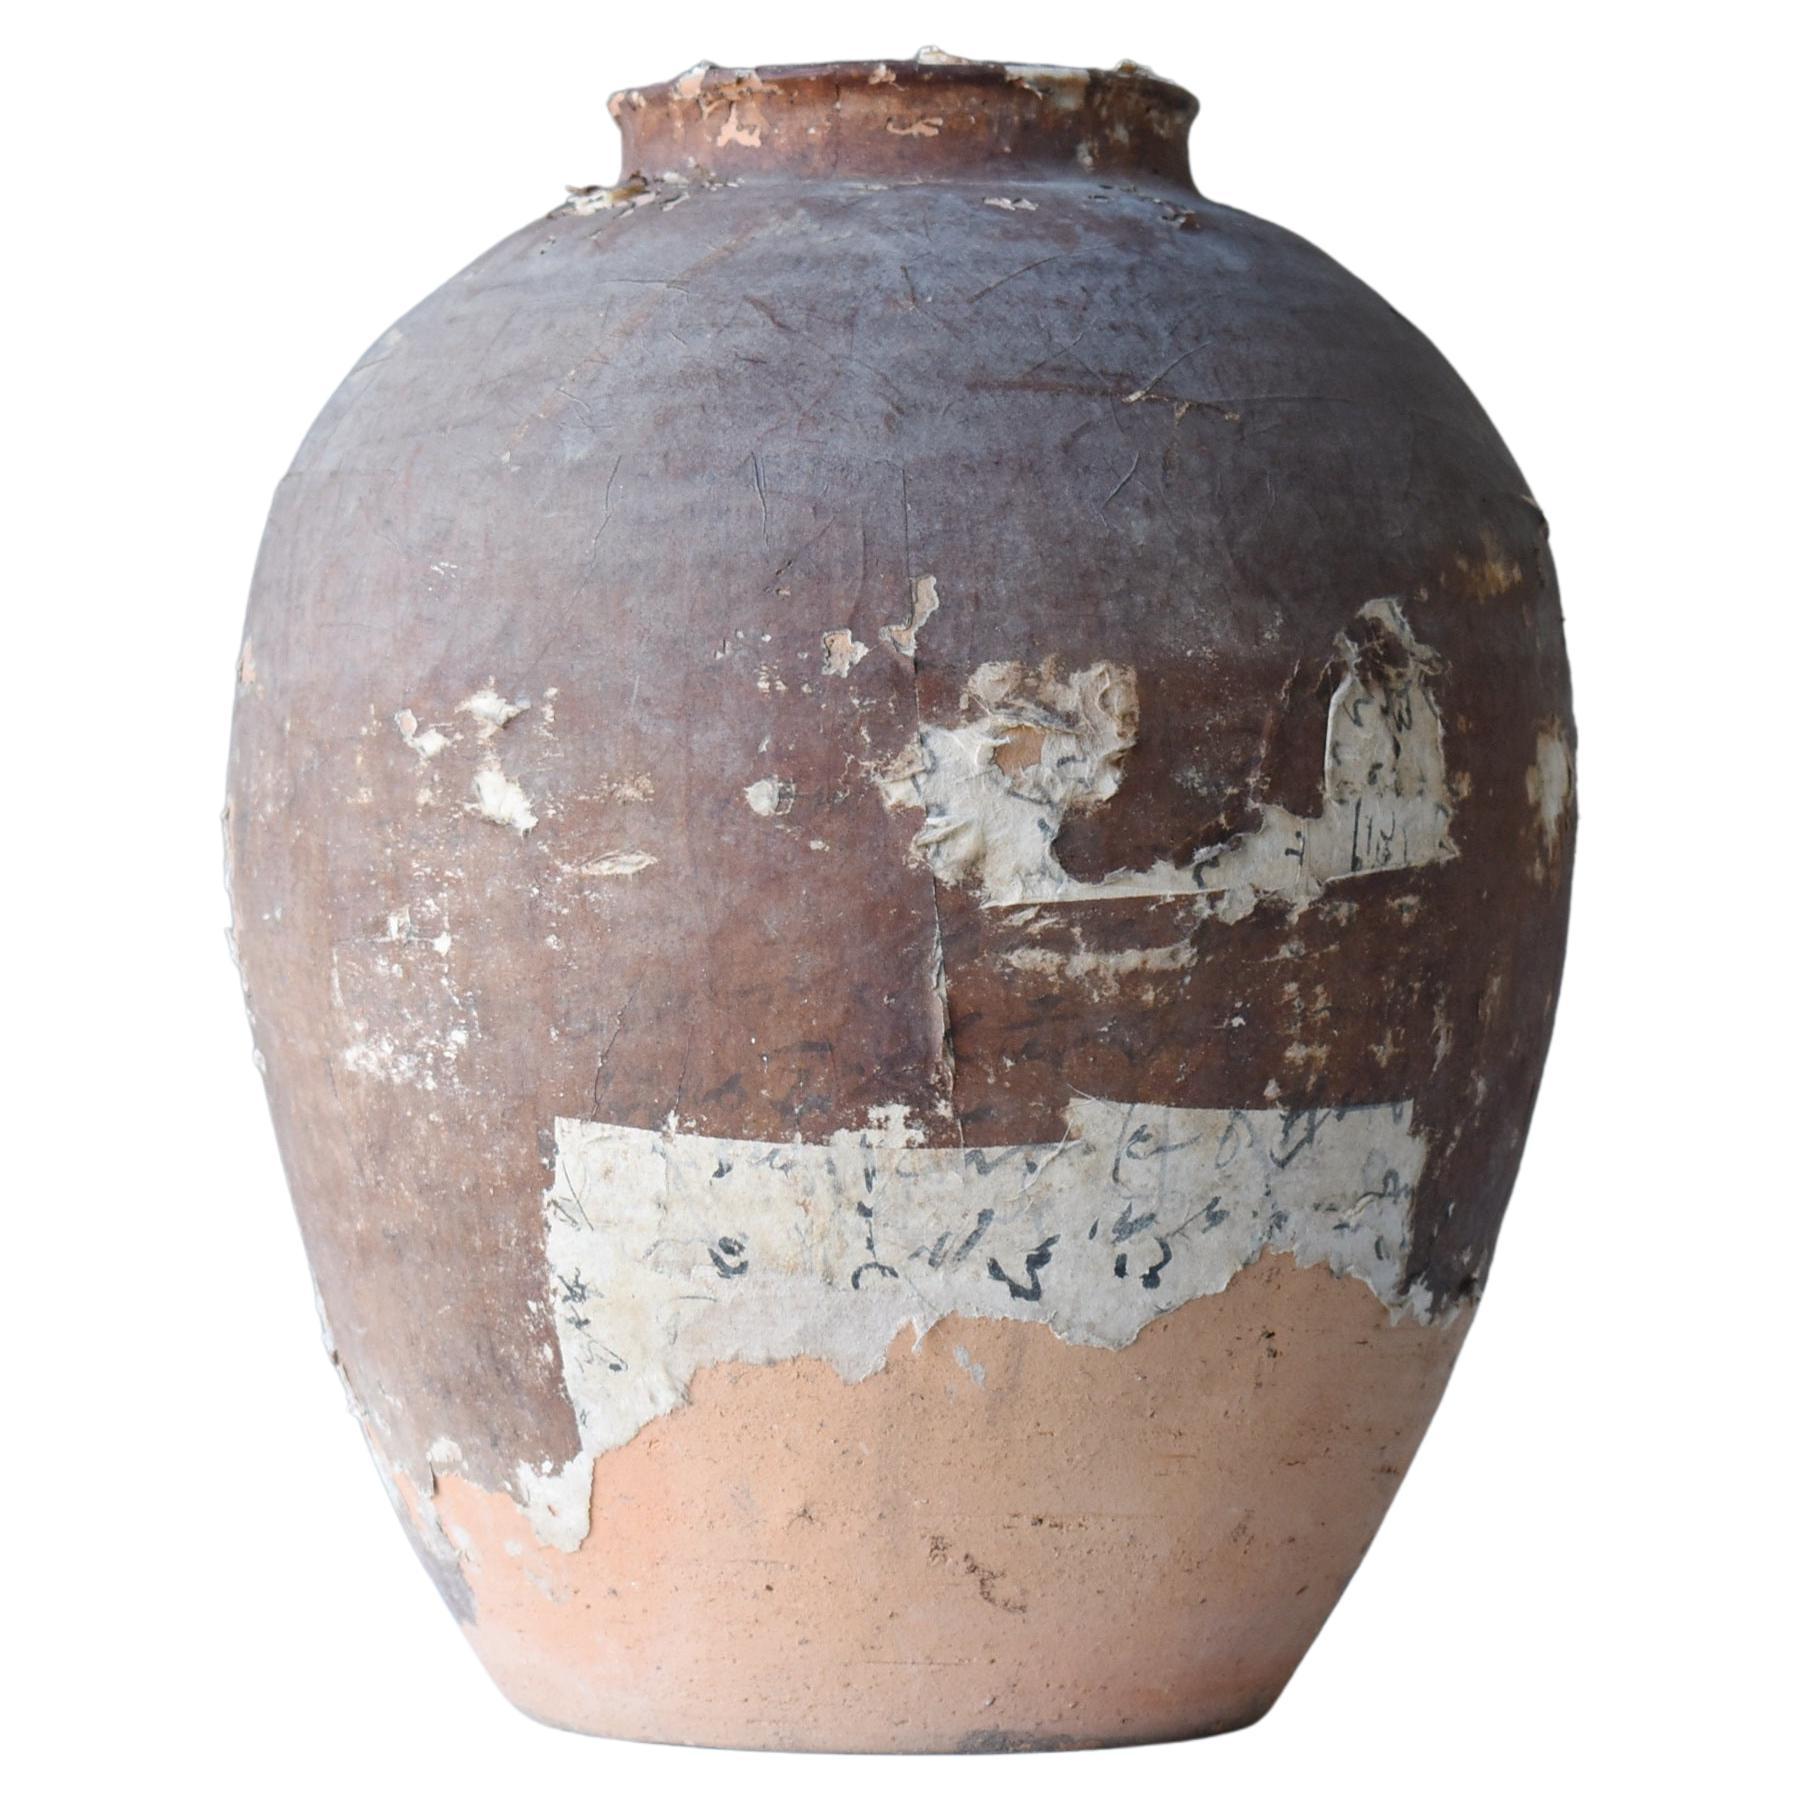 Japanese Old Pottery 1800s-1860s/Antique Vessel Flower Vase Wabisabi Tsubo Jar